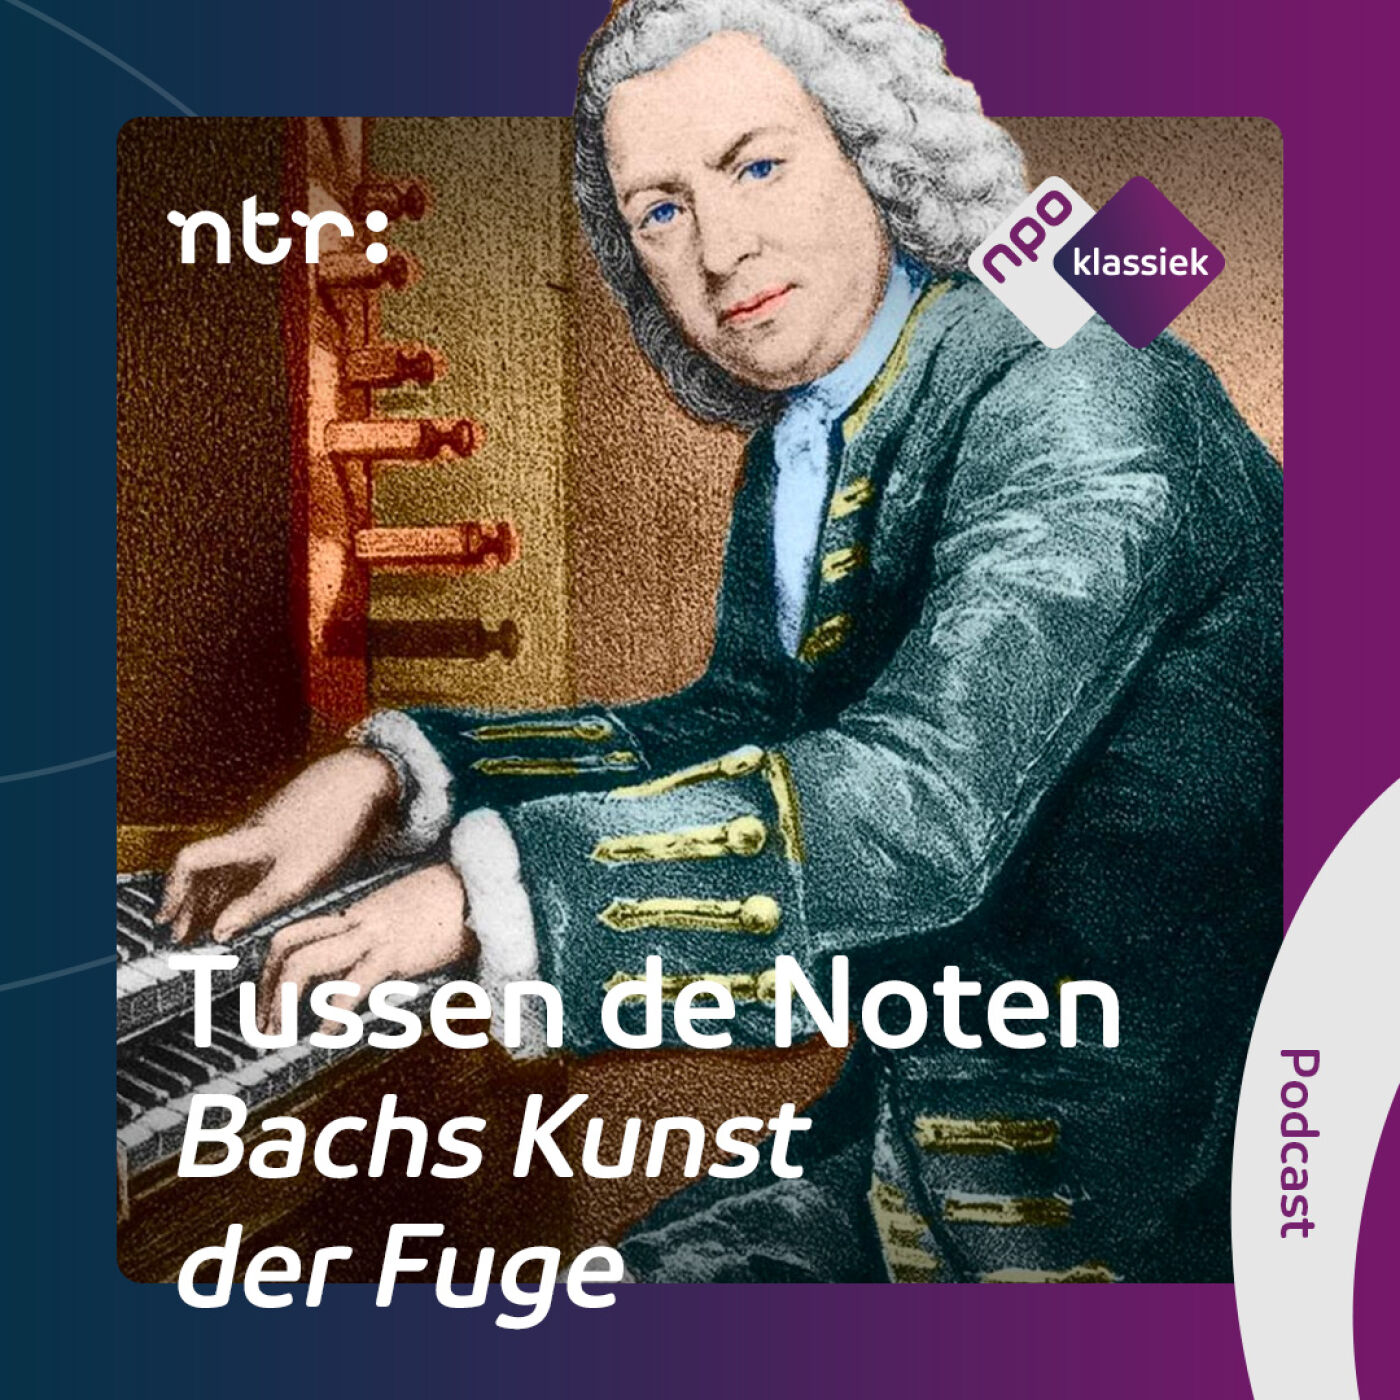 #6 - Bachs Kunst der Fuge: Het échte werk - 6. De 4 canons: muziek of wiskunde? (S04)